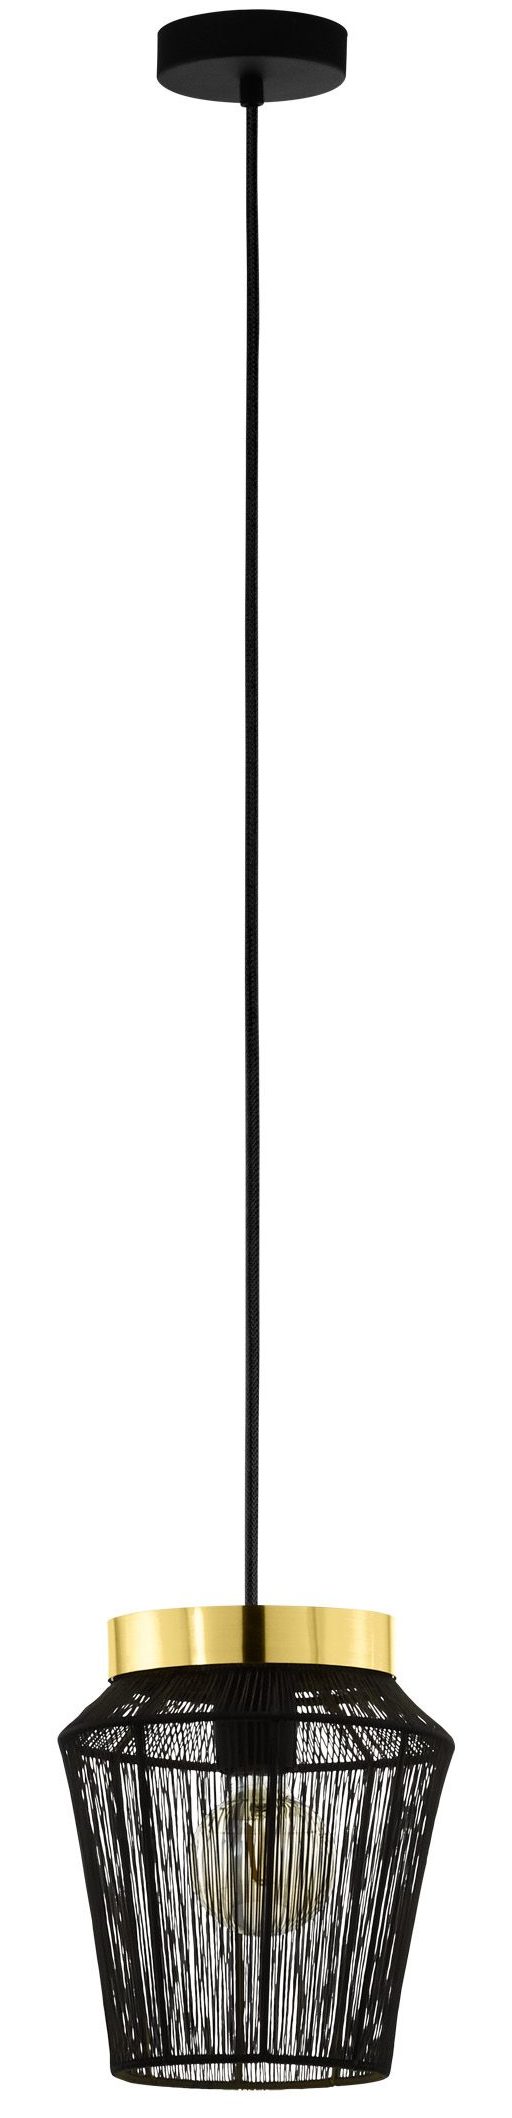 Escandidos hanglamp - zwart - geelkoper